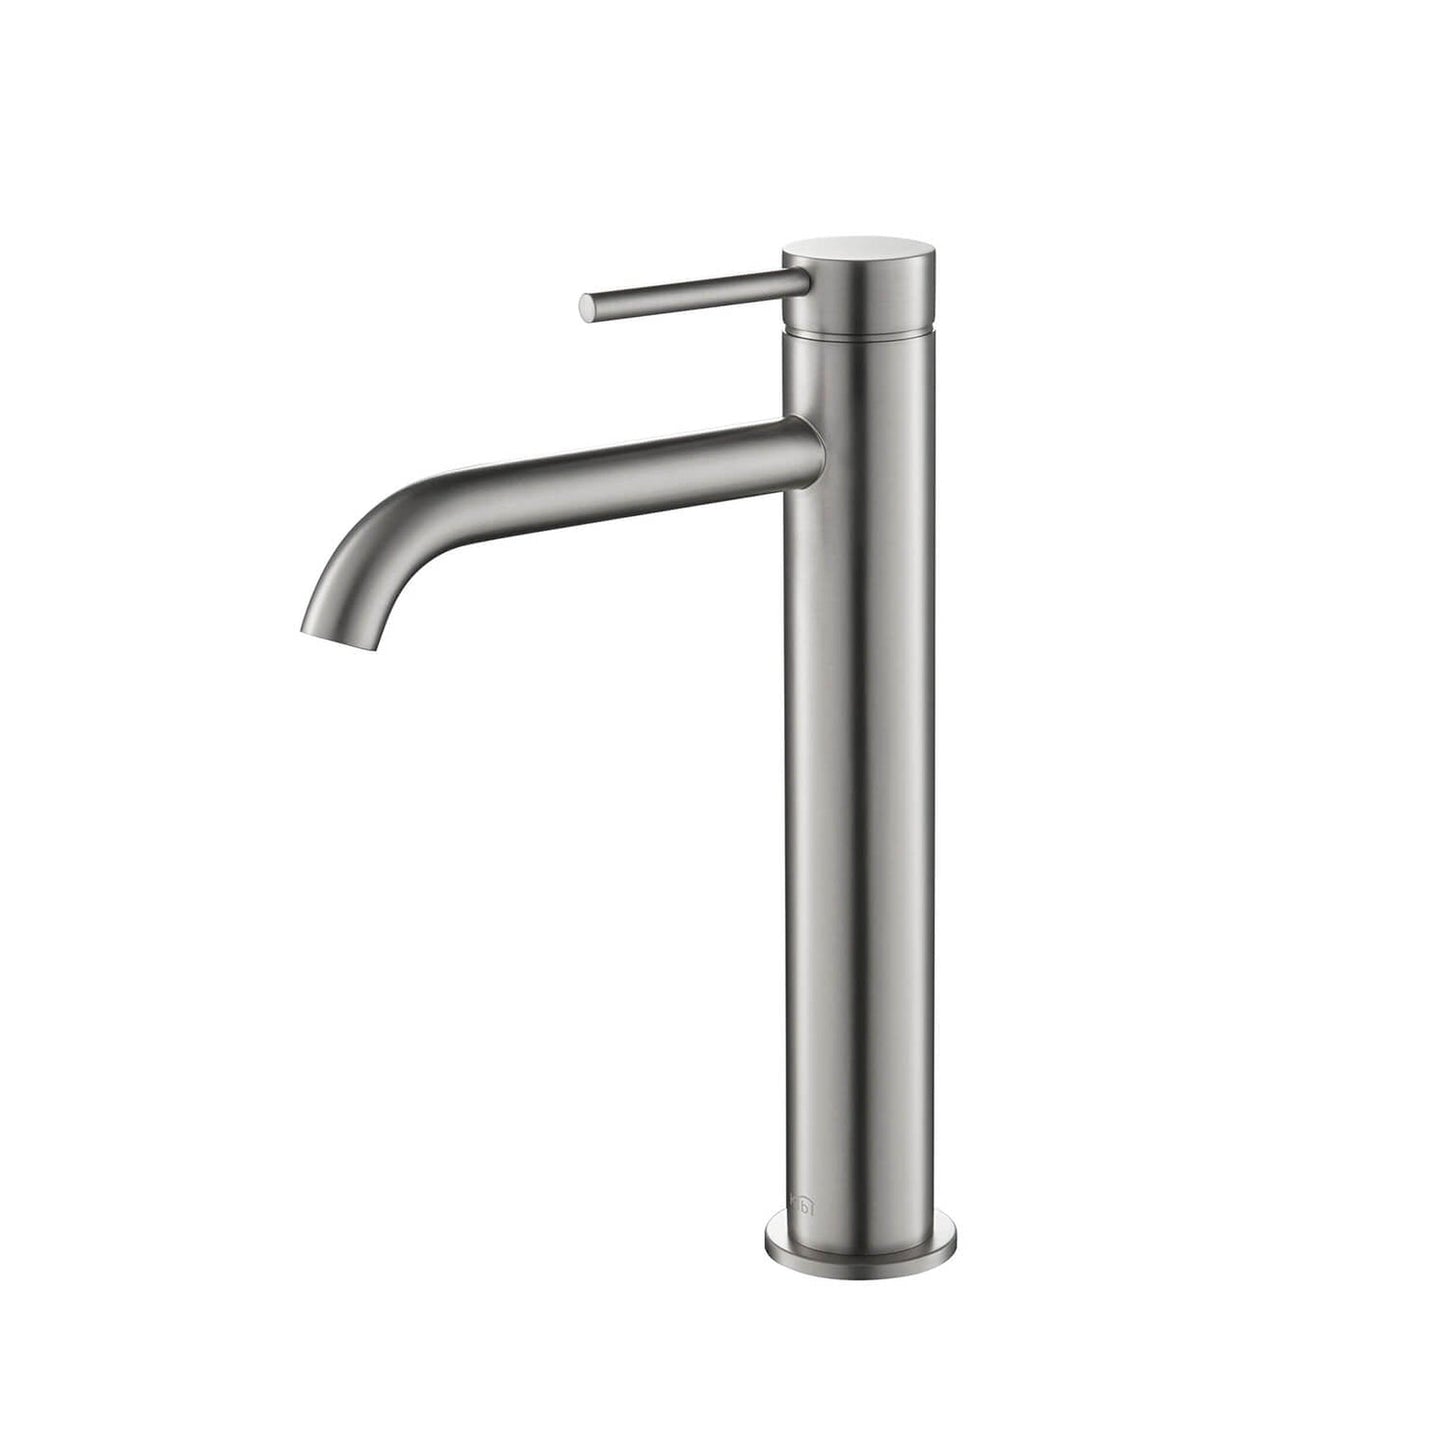 KIBI Circular Single Handle Brushed Nickel Solid Brass Bathroom Vessel Sink Faucet